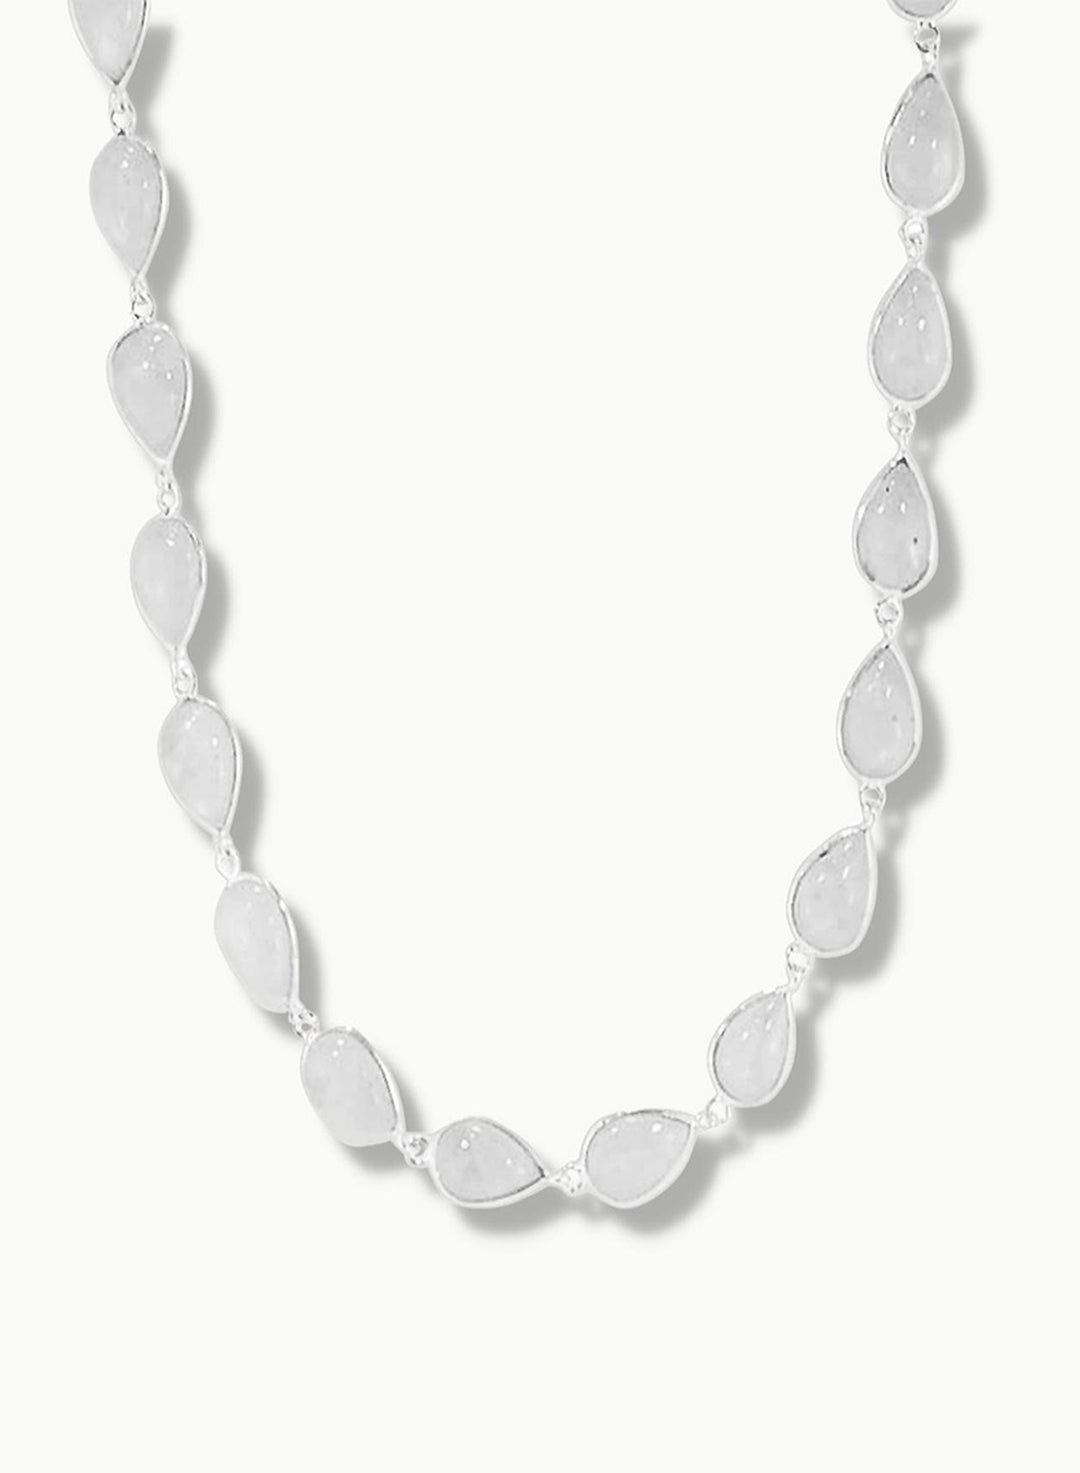 Moonstone Silver Necklace - Dew Drops